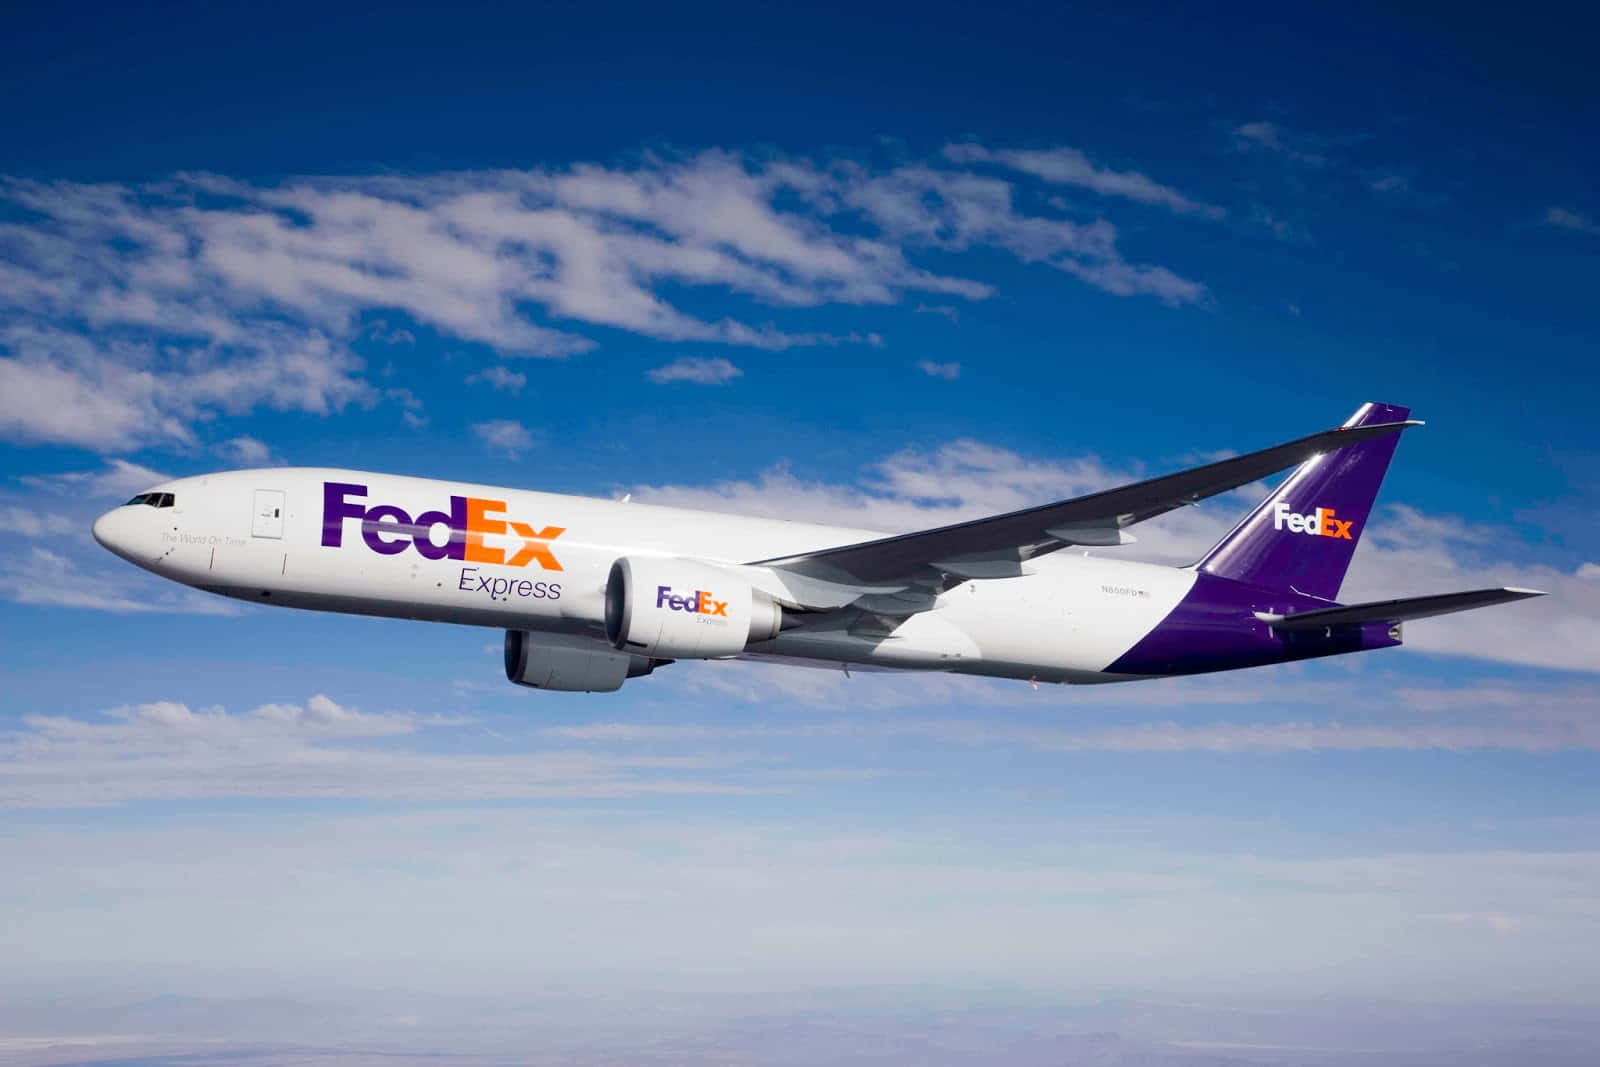 Fedex Boeing 787 - Flt - Flt - Flt - Flt